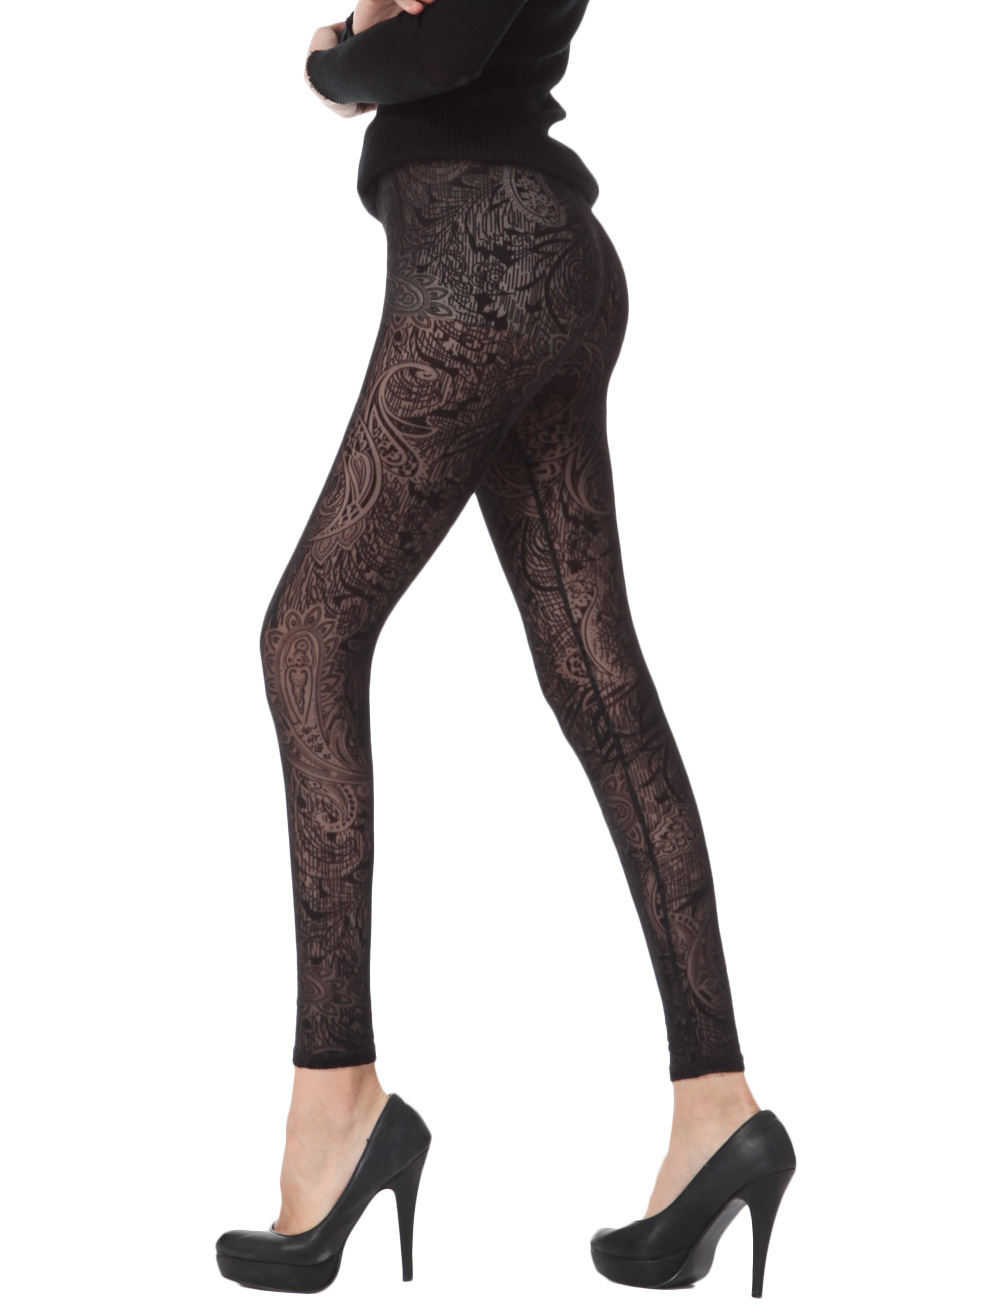 Vintage Black Lace Jacquard Shaping Leggings For Women - Milanoo.com